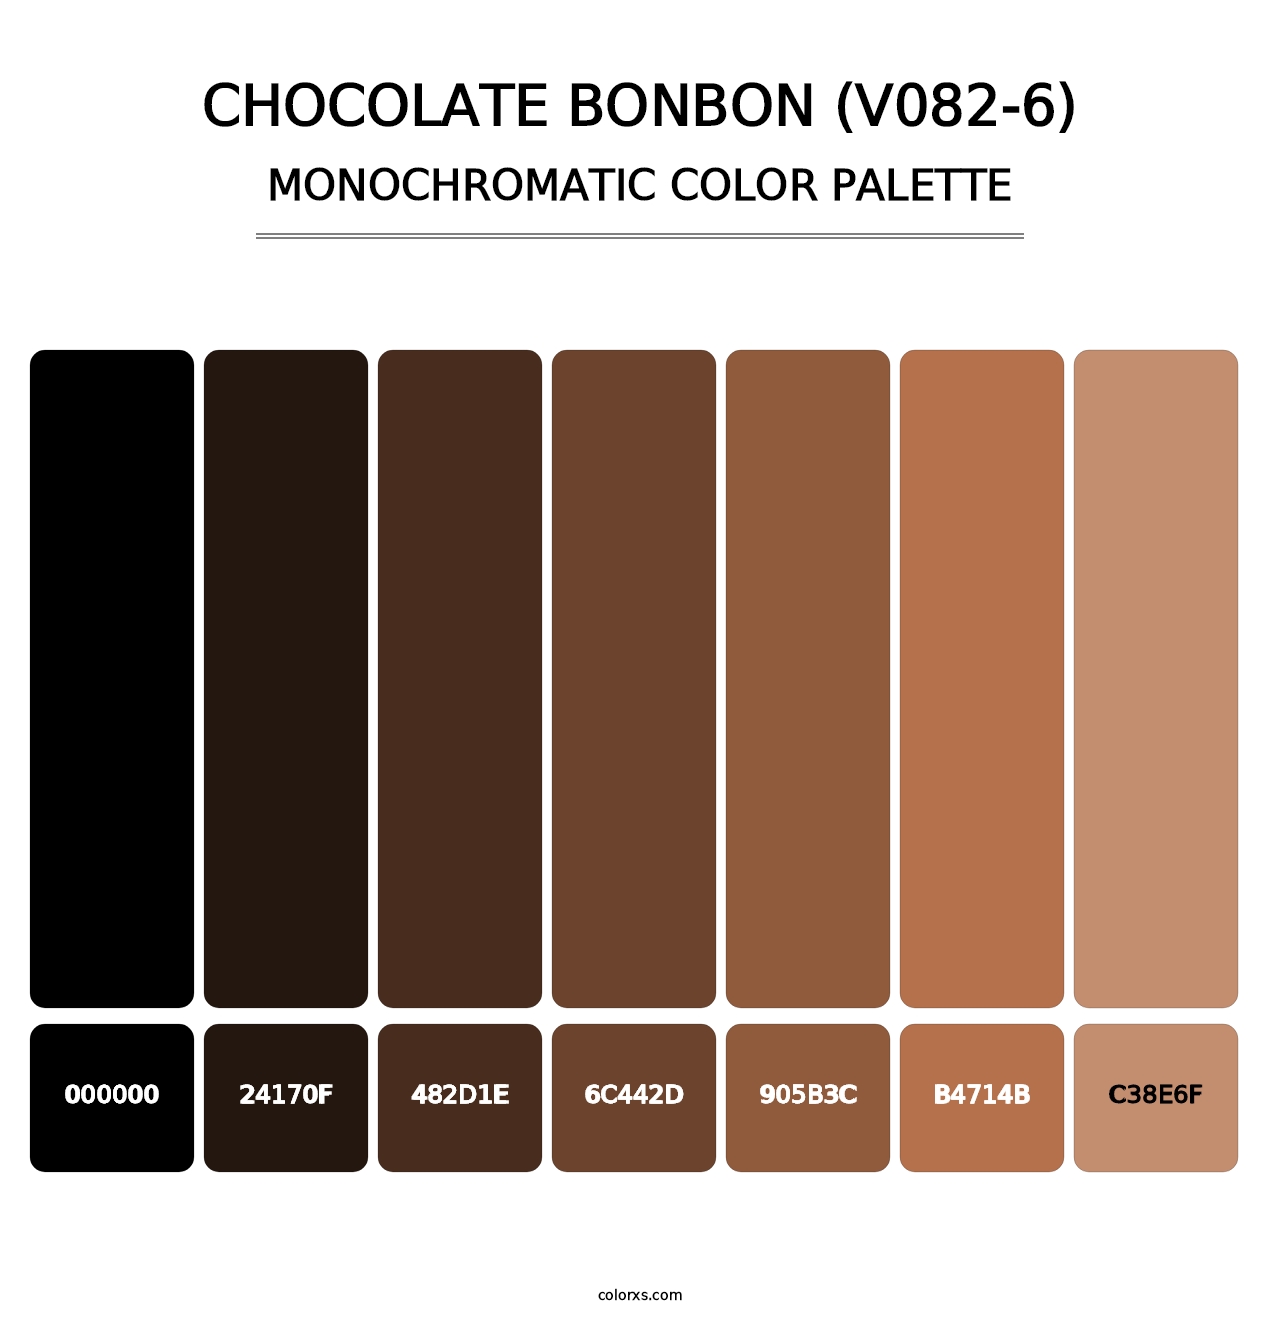 Chocolate Bonbon (V082-6) - Monochromatic Color Palette